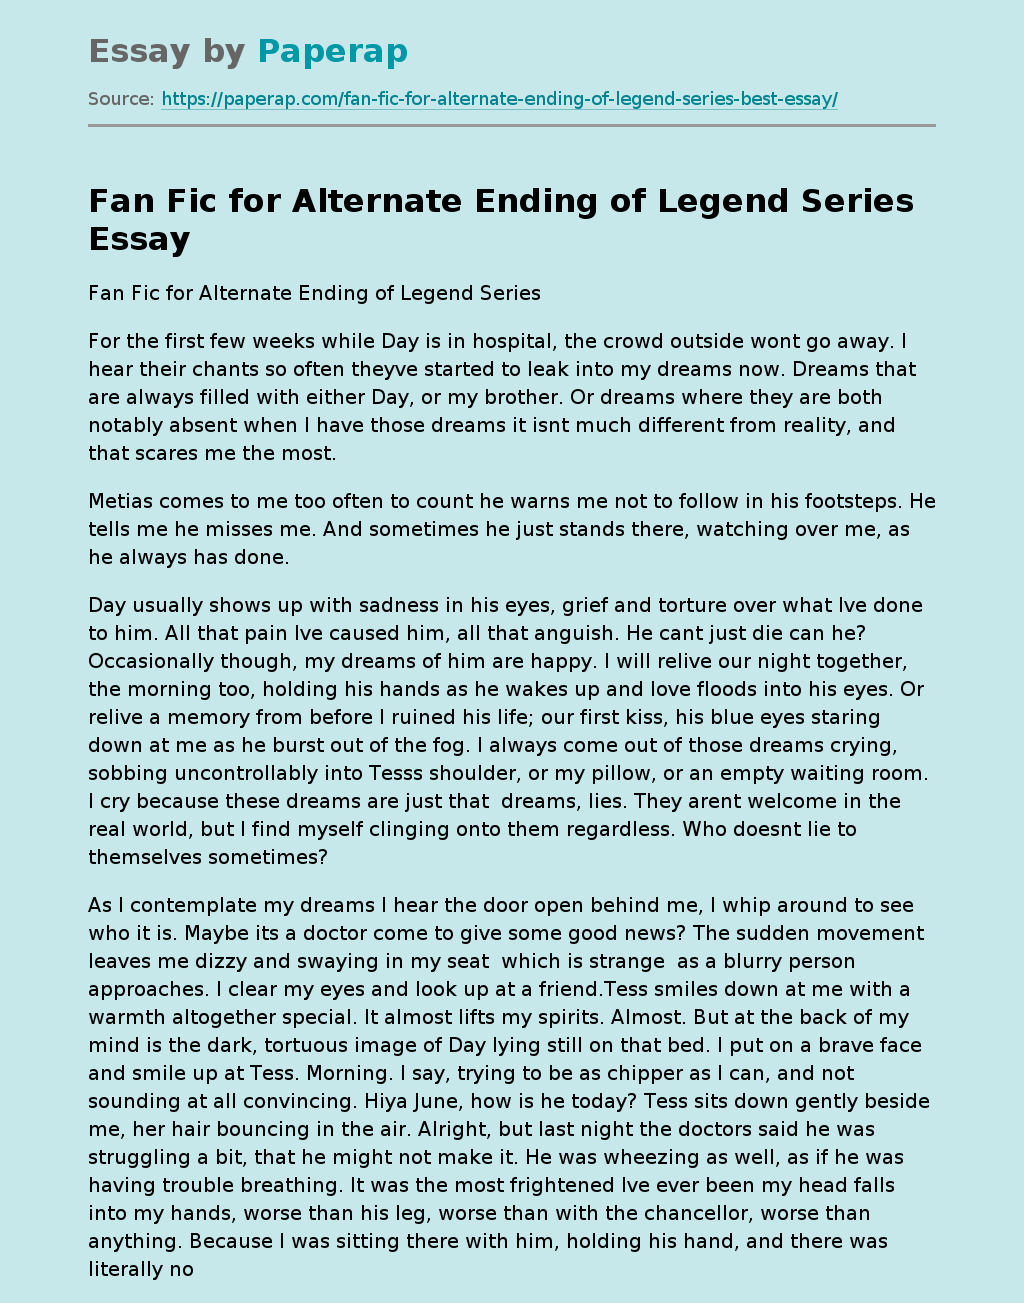 Fan Fic for Alternate Ending of Legend Series